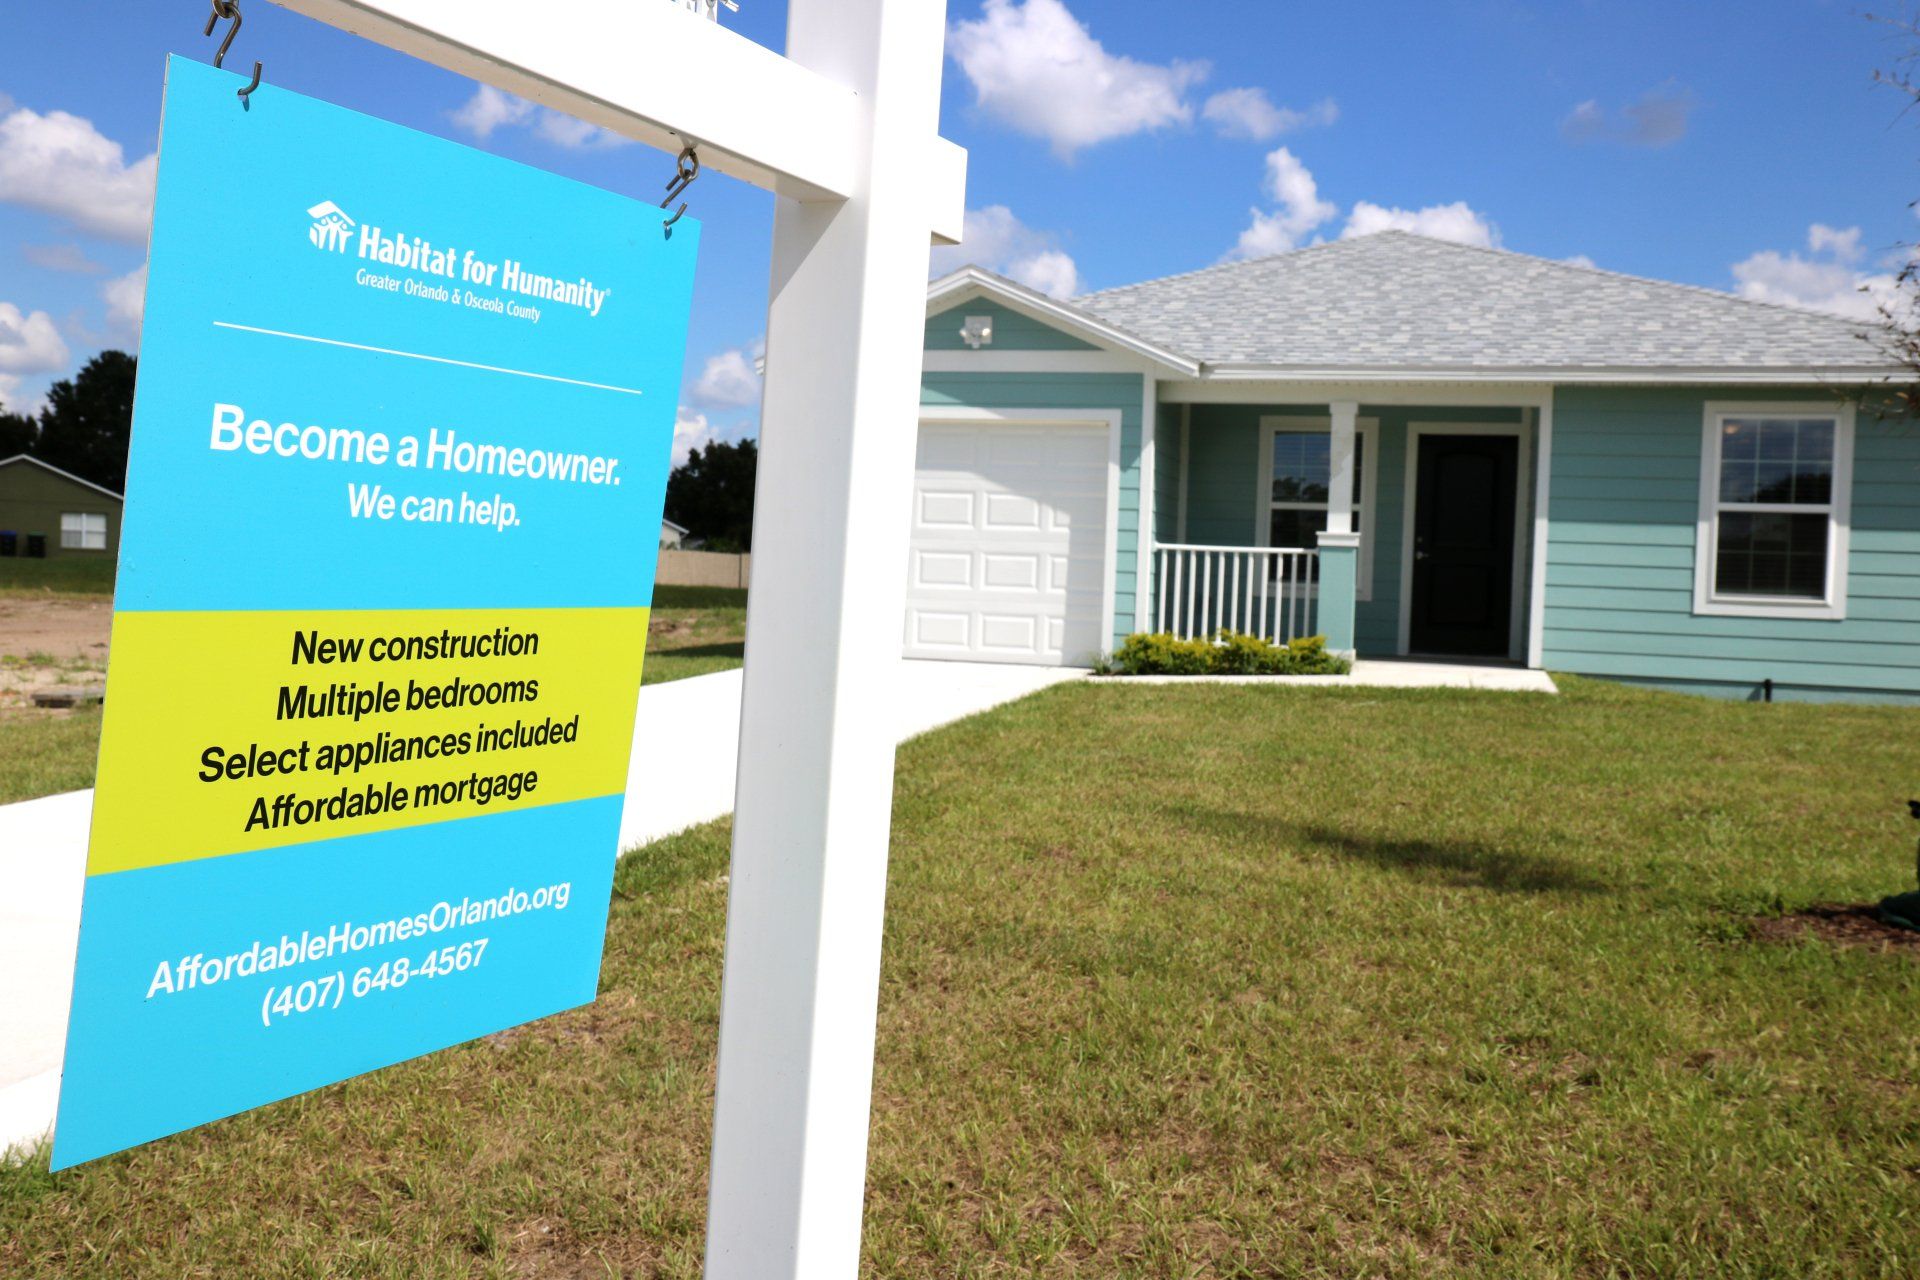 Uma placa de "Vende-se" está em frente a uma casa azul.